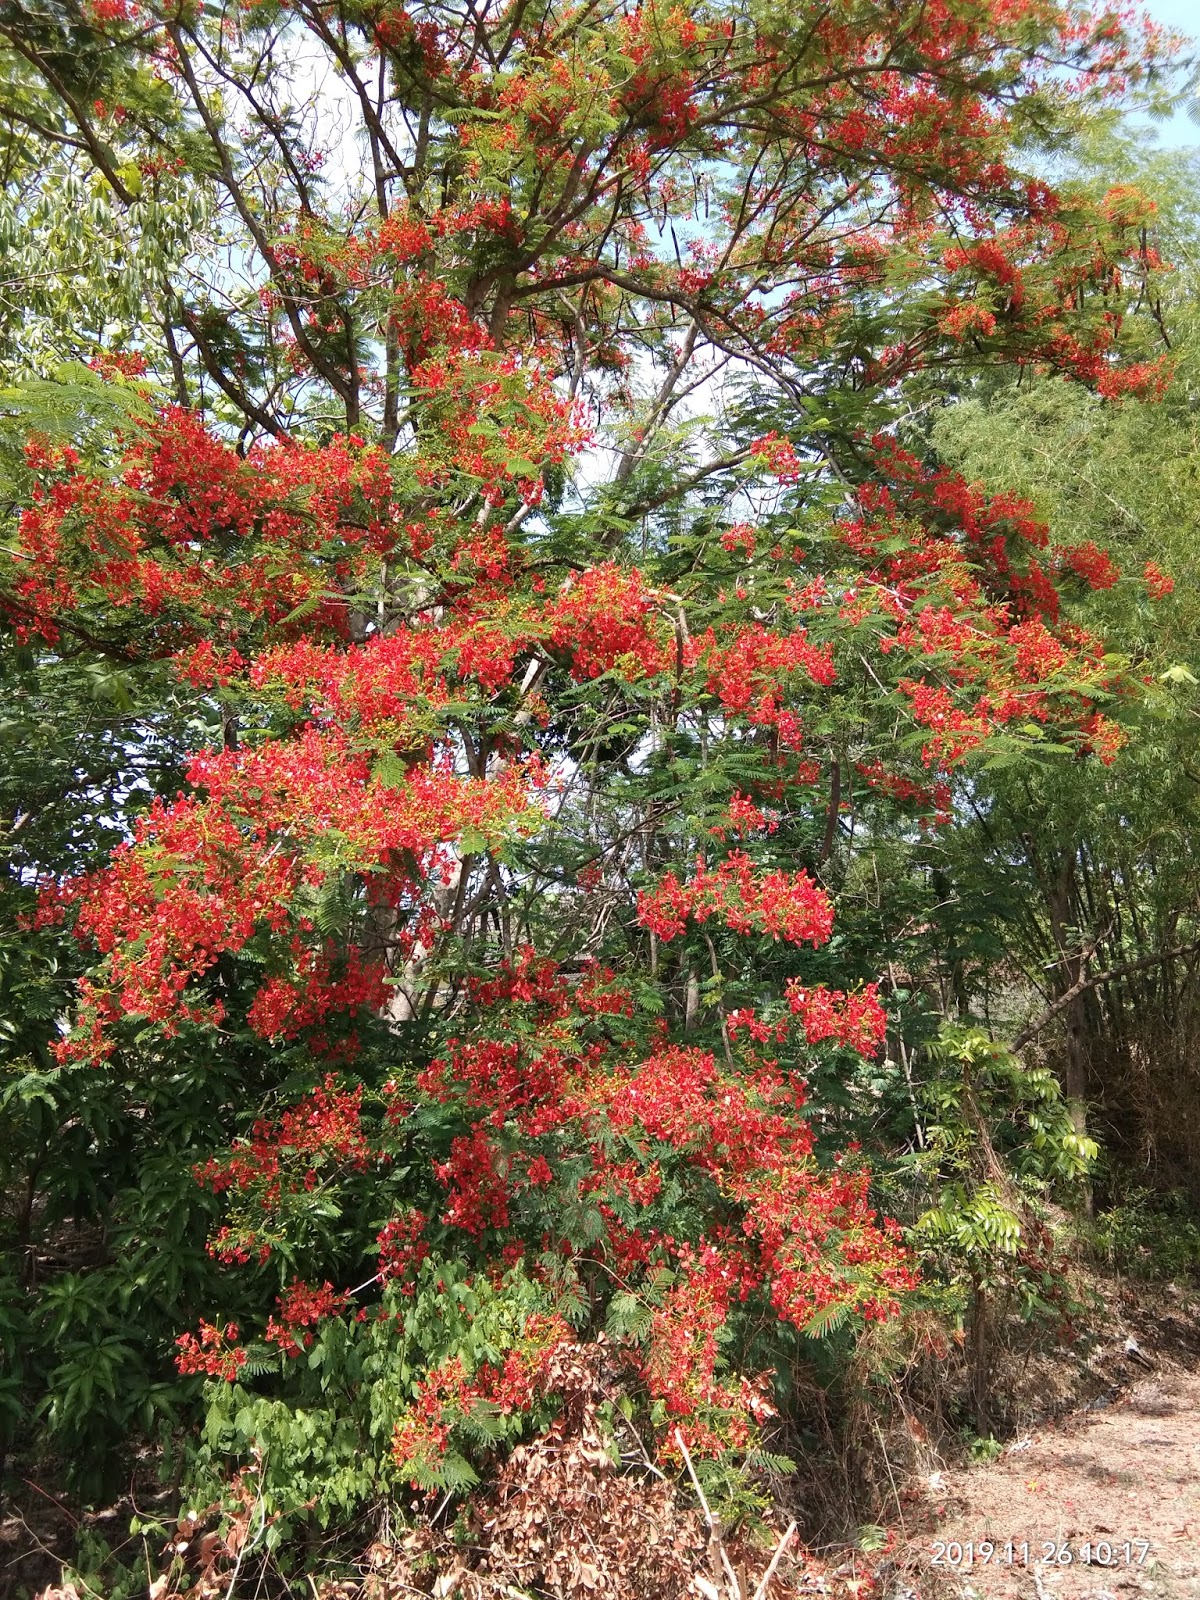 Manfaat biji pohon bunga  kedawung untuk kesehatan dan alam